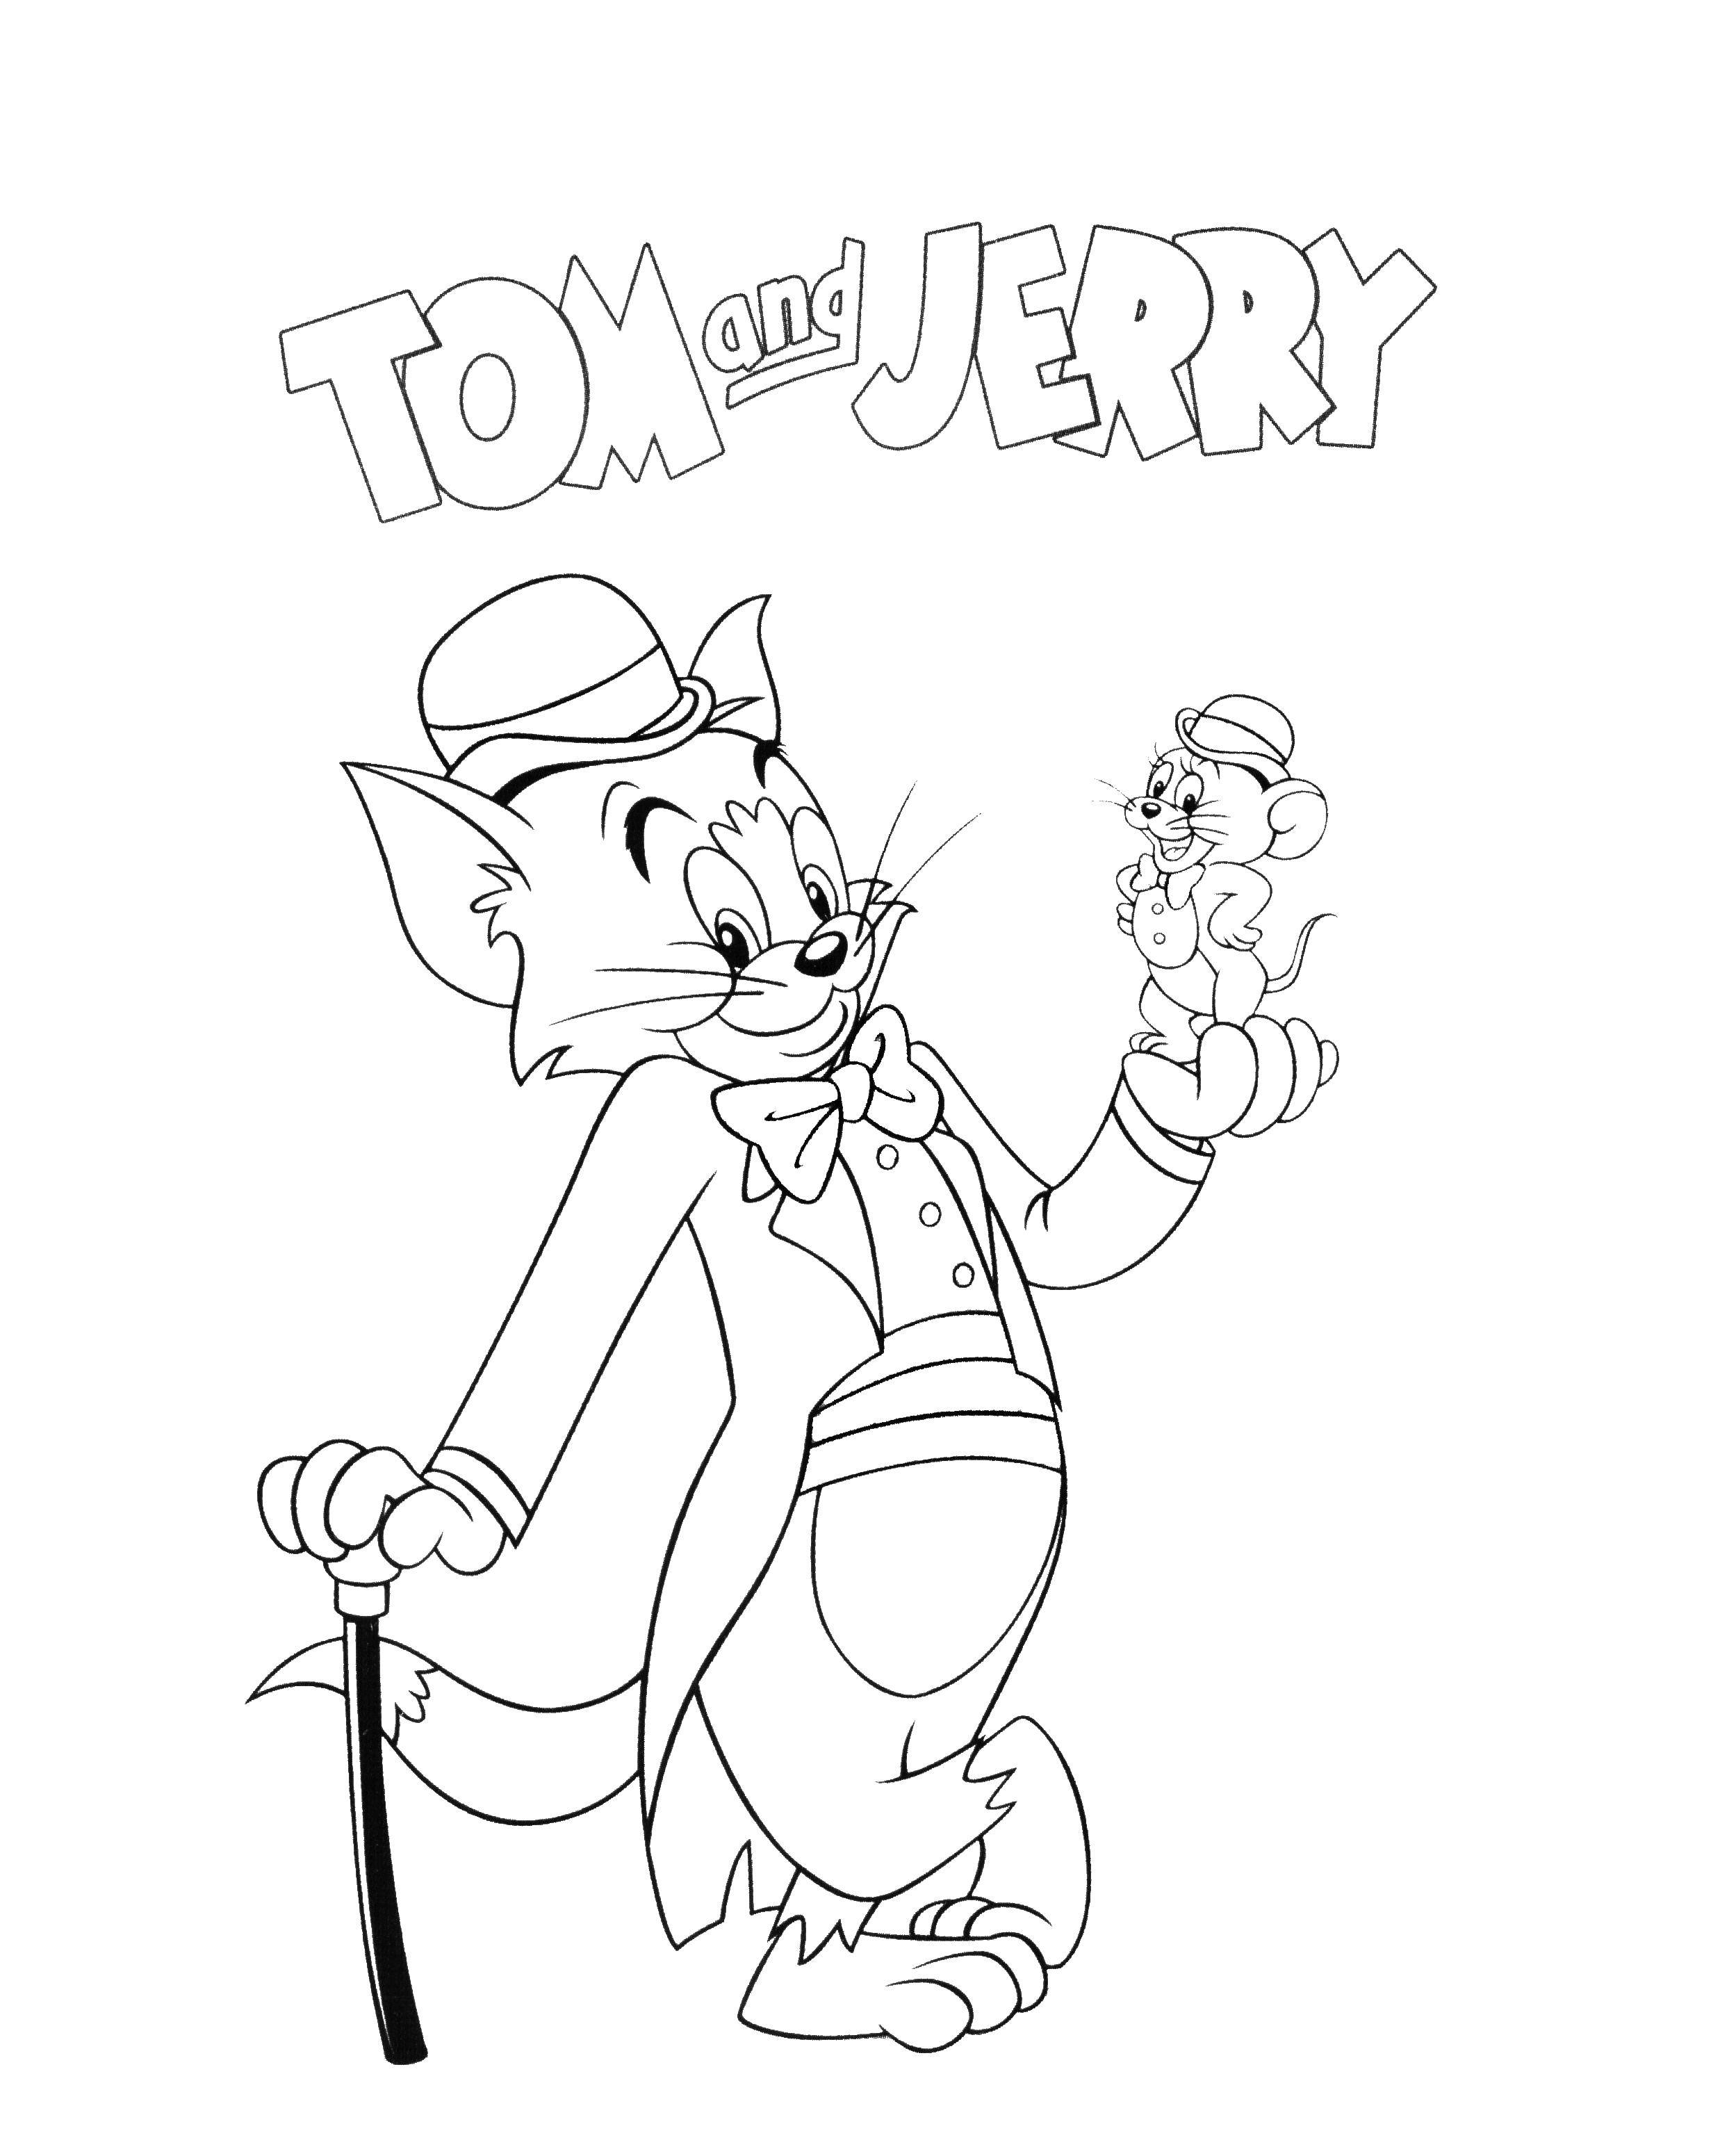 Название: Раскраска Том и джерри. Категория: мультфильмы. Теги: Персонаж из мультфильма, Том и Джерри.